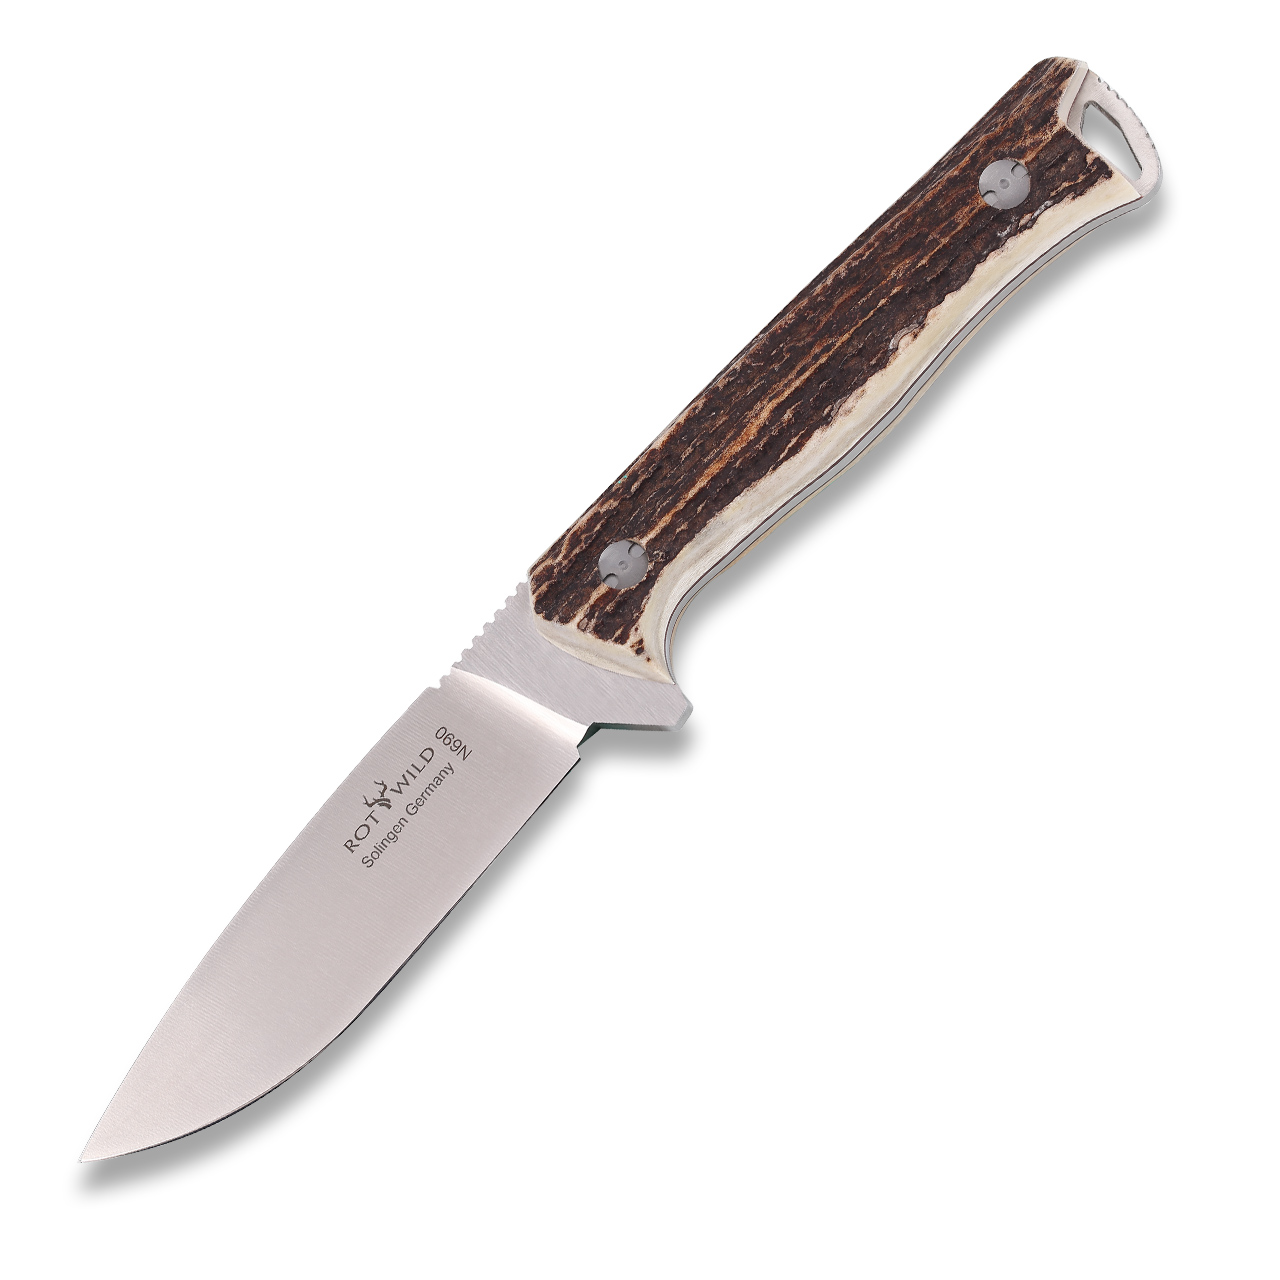 Hunting knife "Sperber" buckhorn